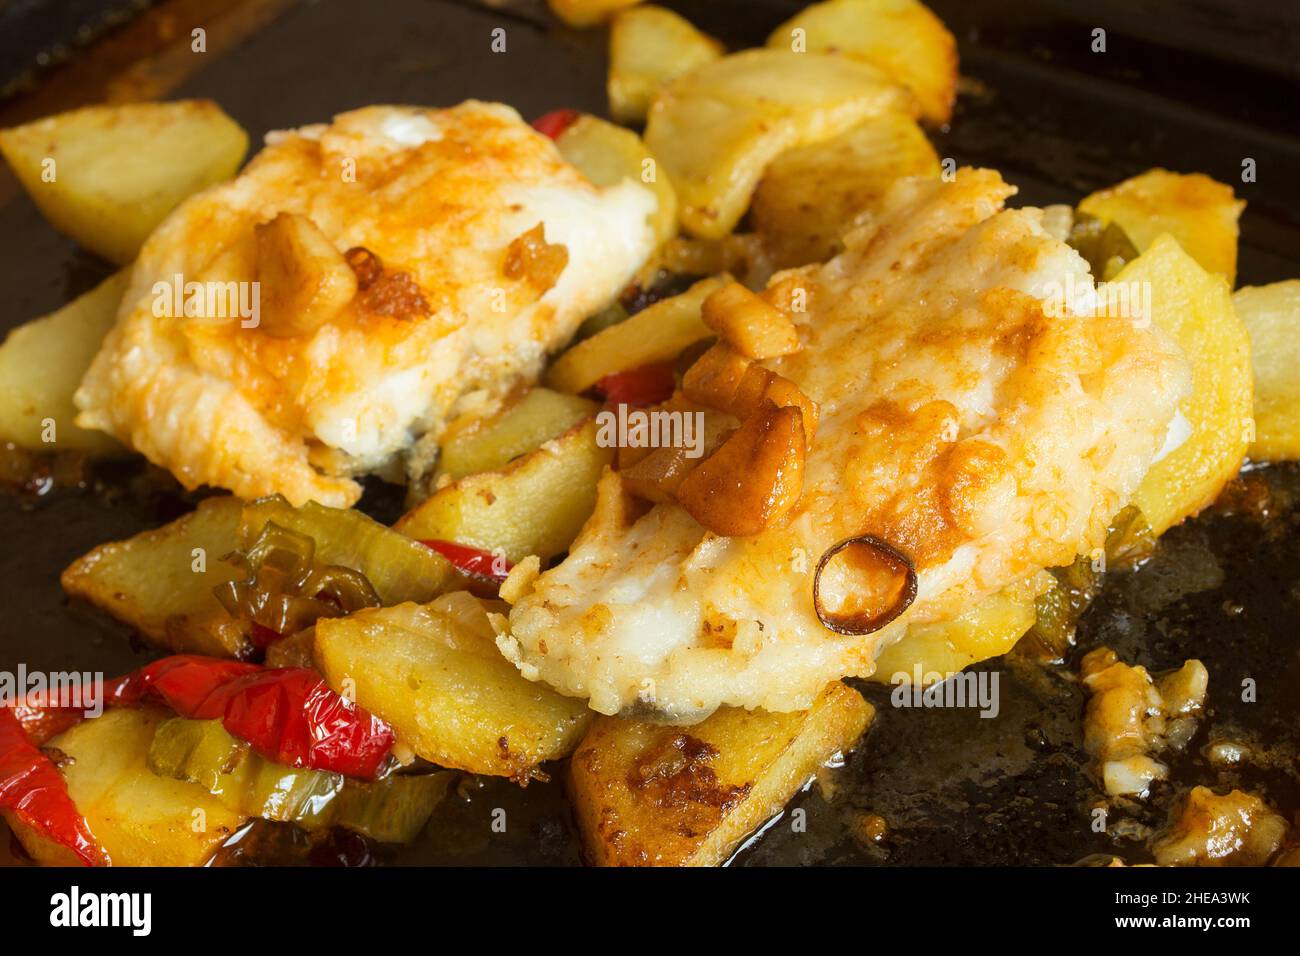 Nahaufnahme von Kabeljau auf einem Backblech, das mit roten Paprika, Kartoffeln und Knoblauch gekocht wird. Fisch und gesunde Lebensmittel. Stockfoto